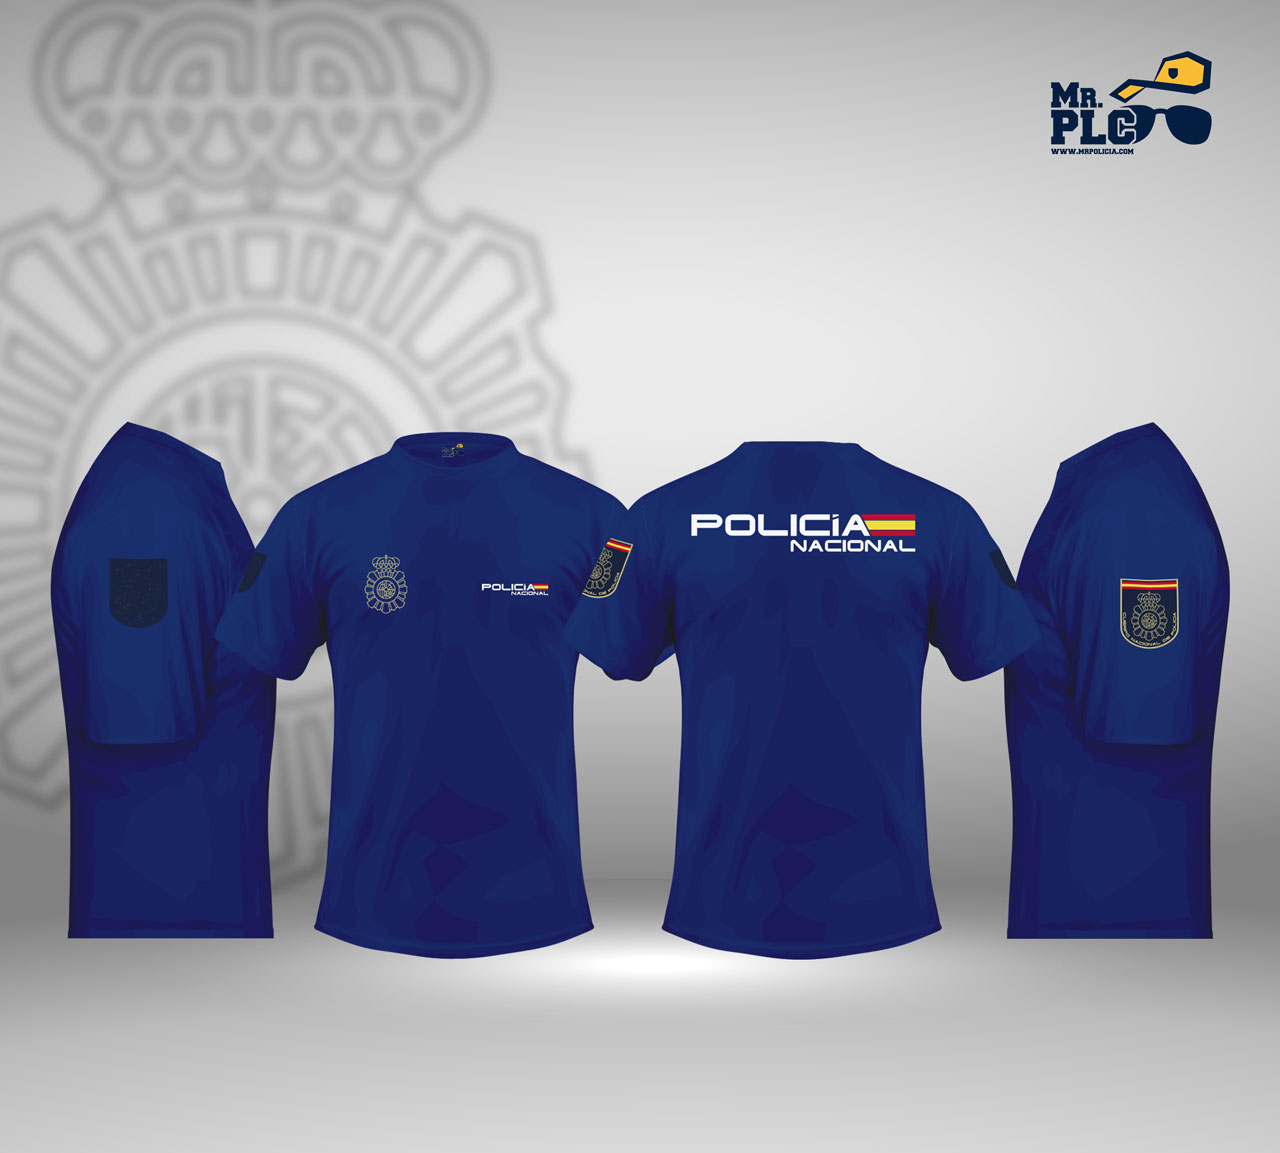 Camiseta de la Policía Nacional y del Ejército Español